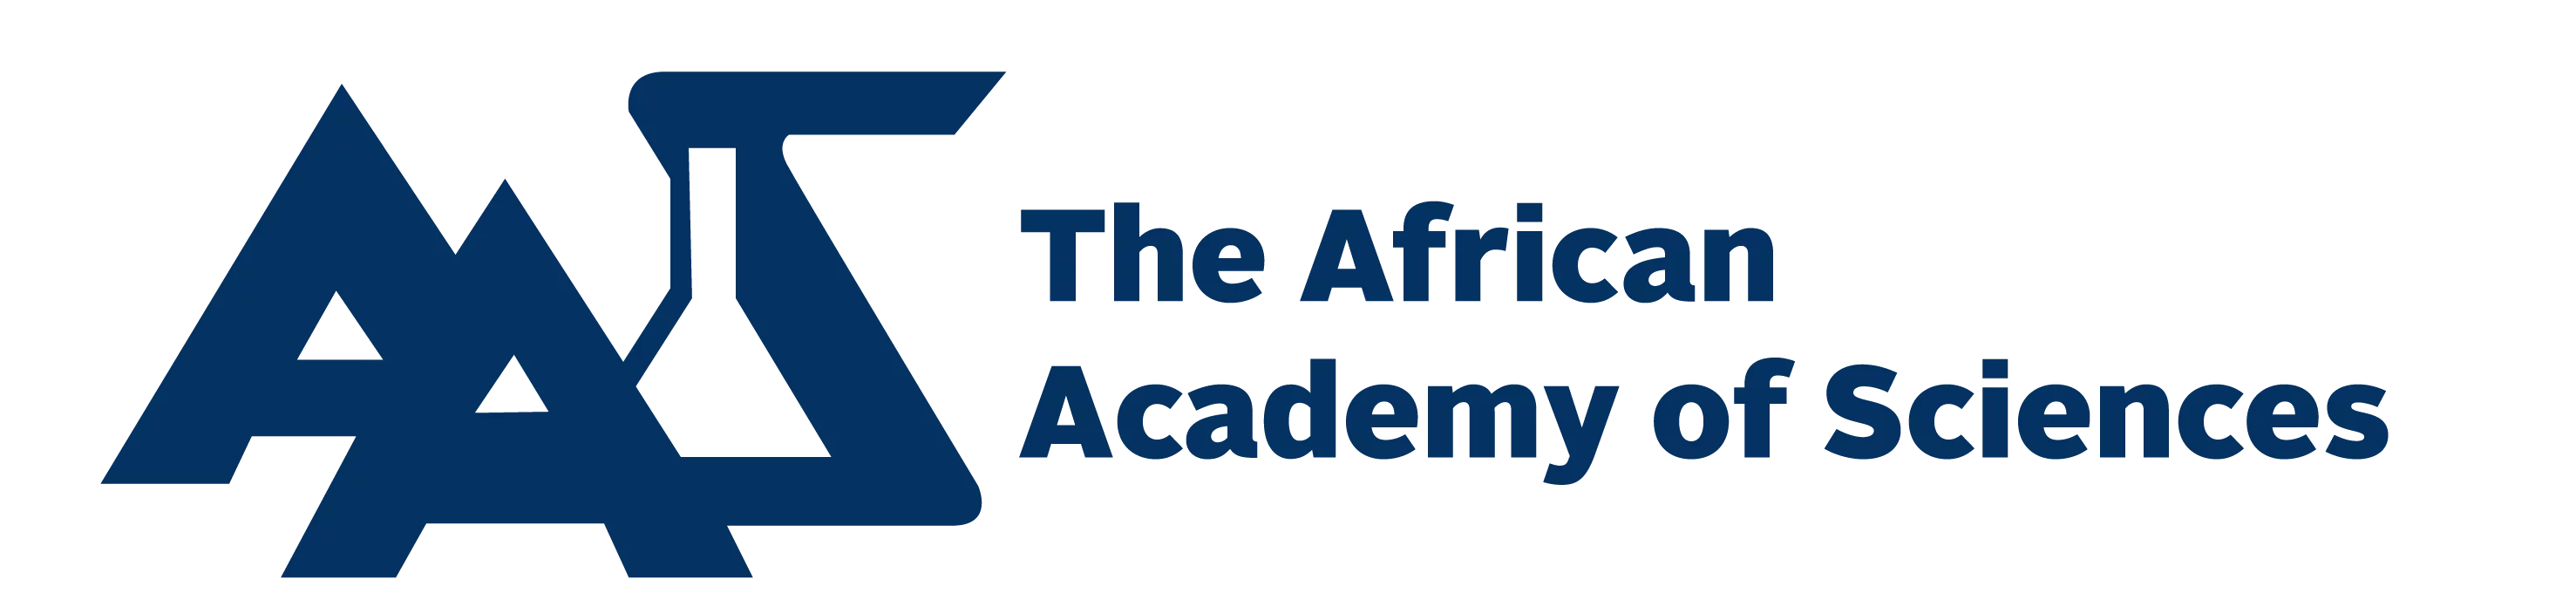 Nominations AAS pour la participation de scientifiques africains à la 7e réunion de Lindau sur les sciences économiques 2019